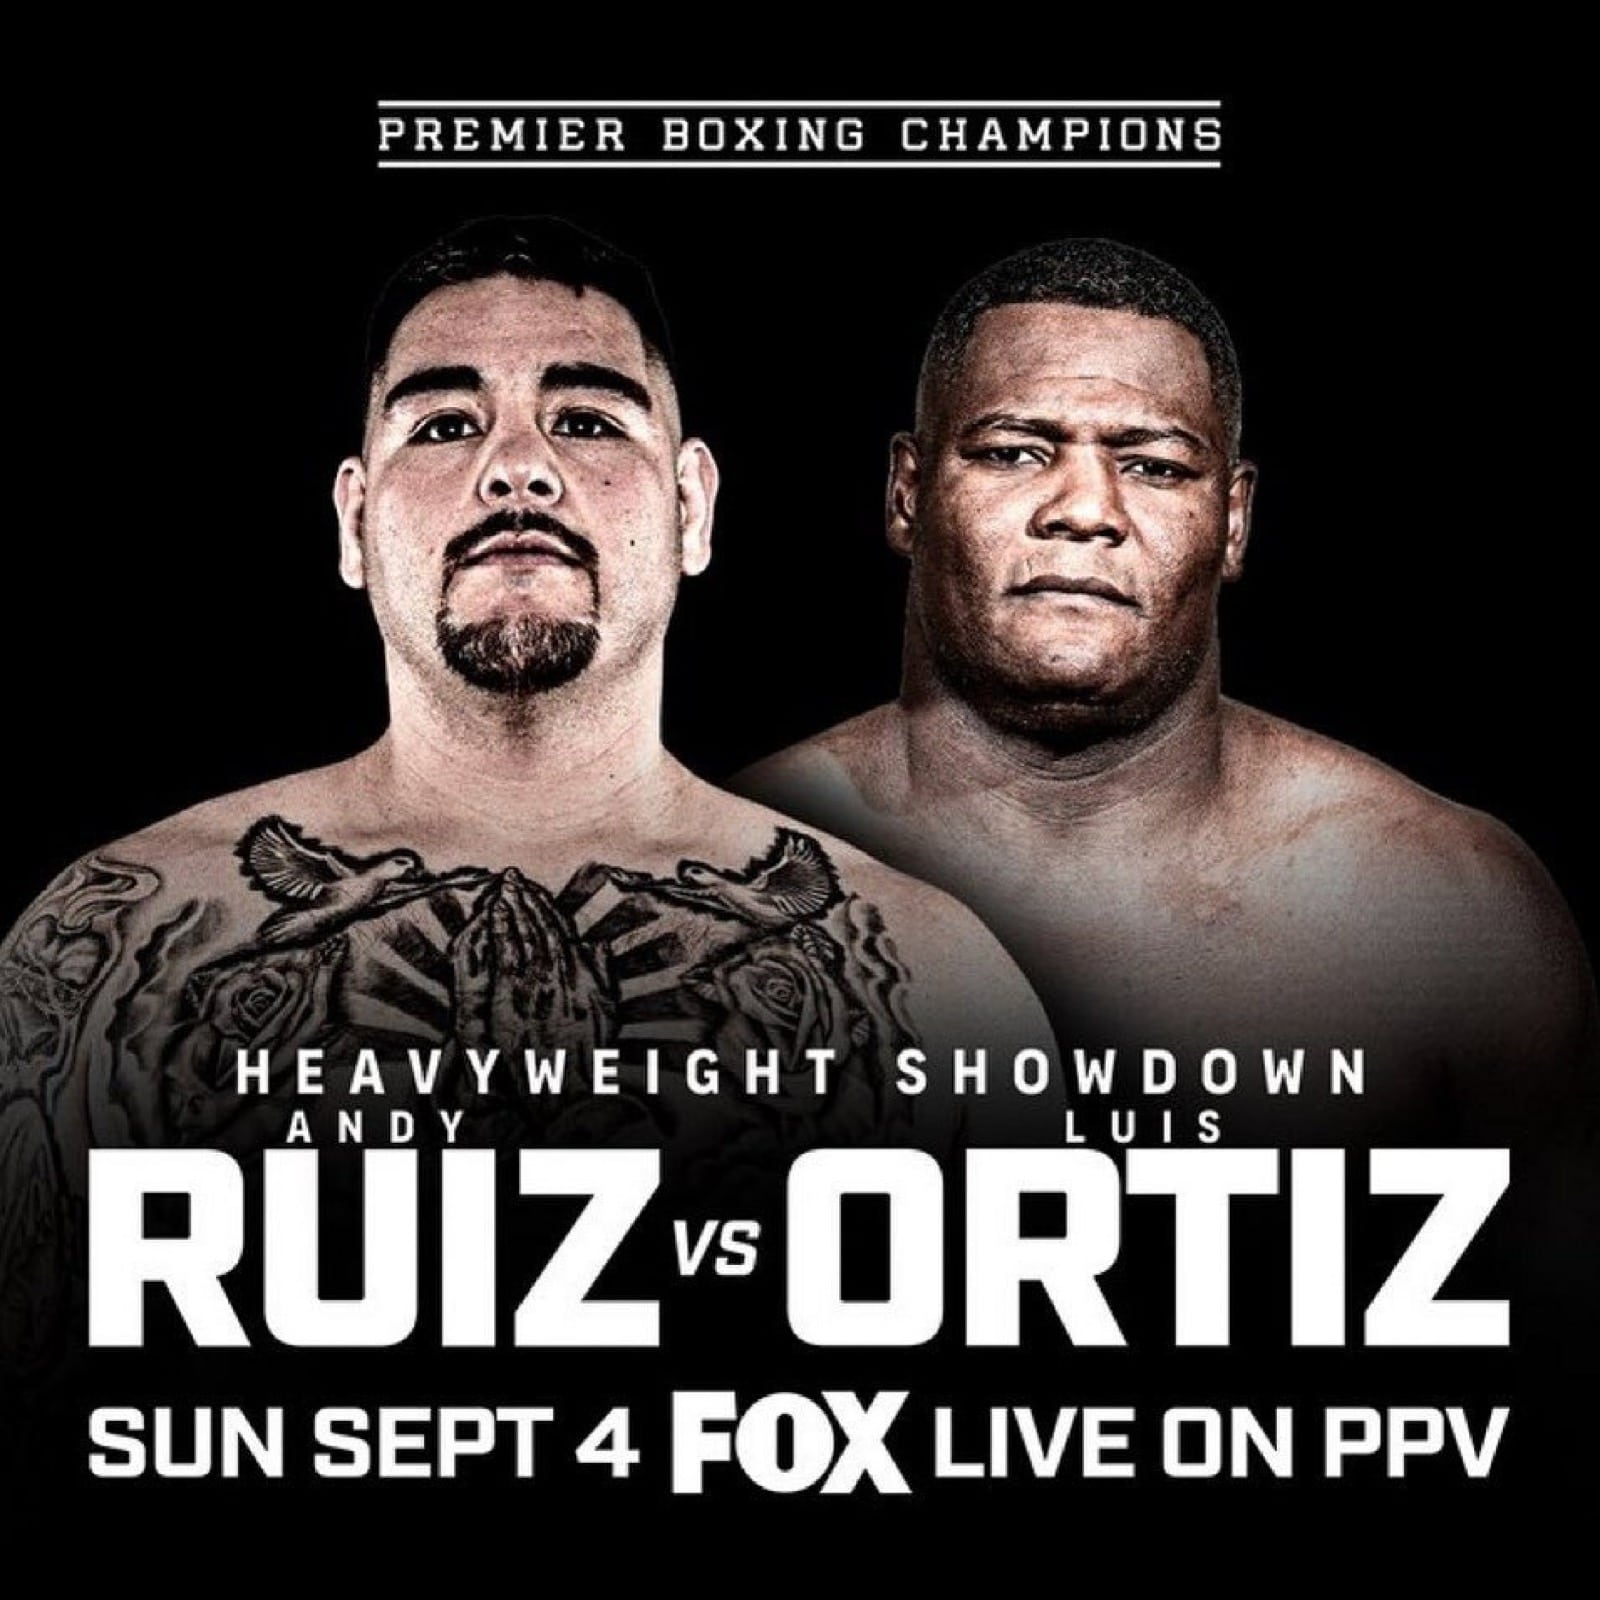 Andy Ruiz Jr, Luis Ortiz boxing image / photo